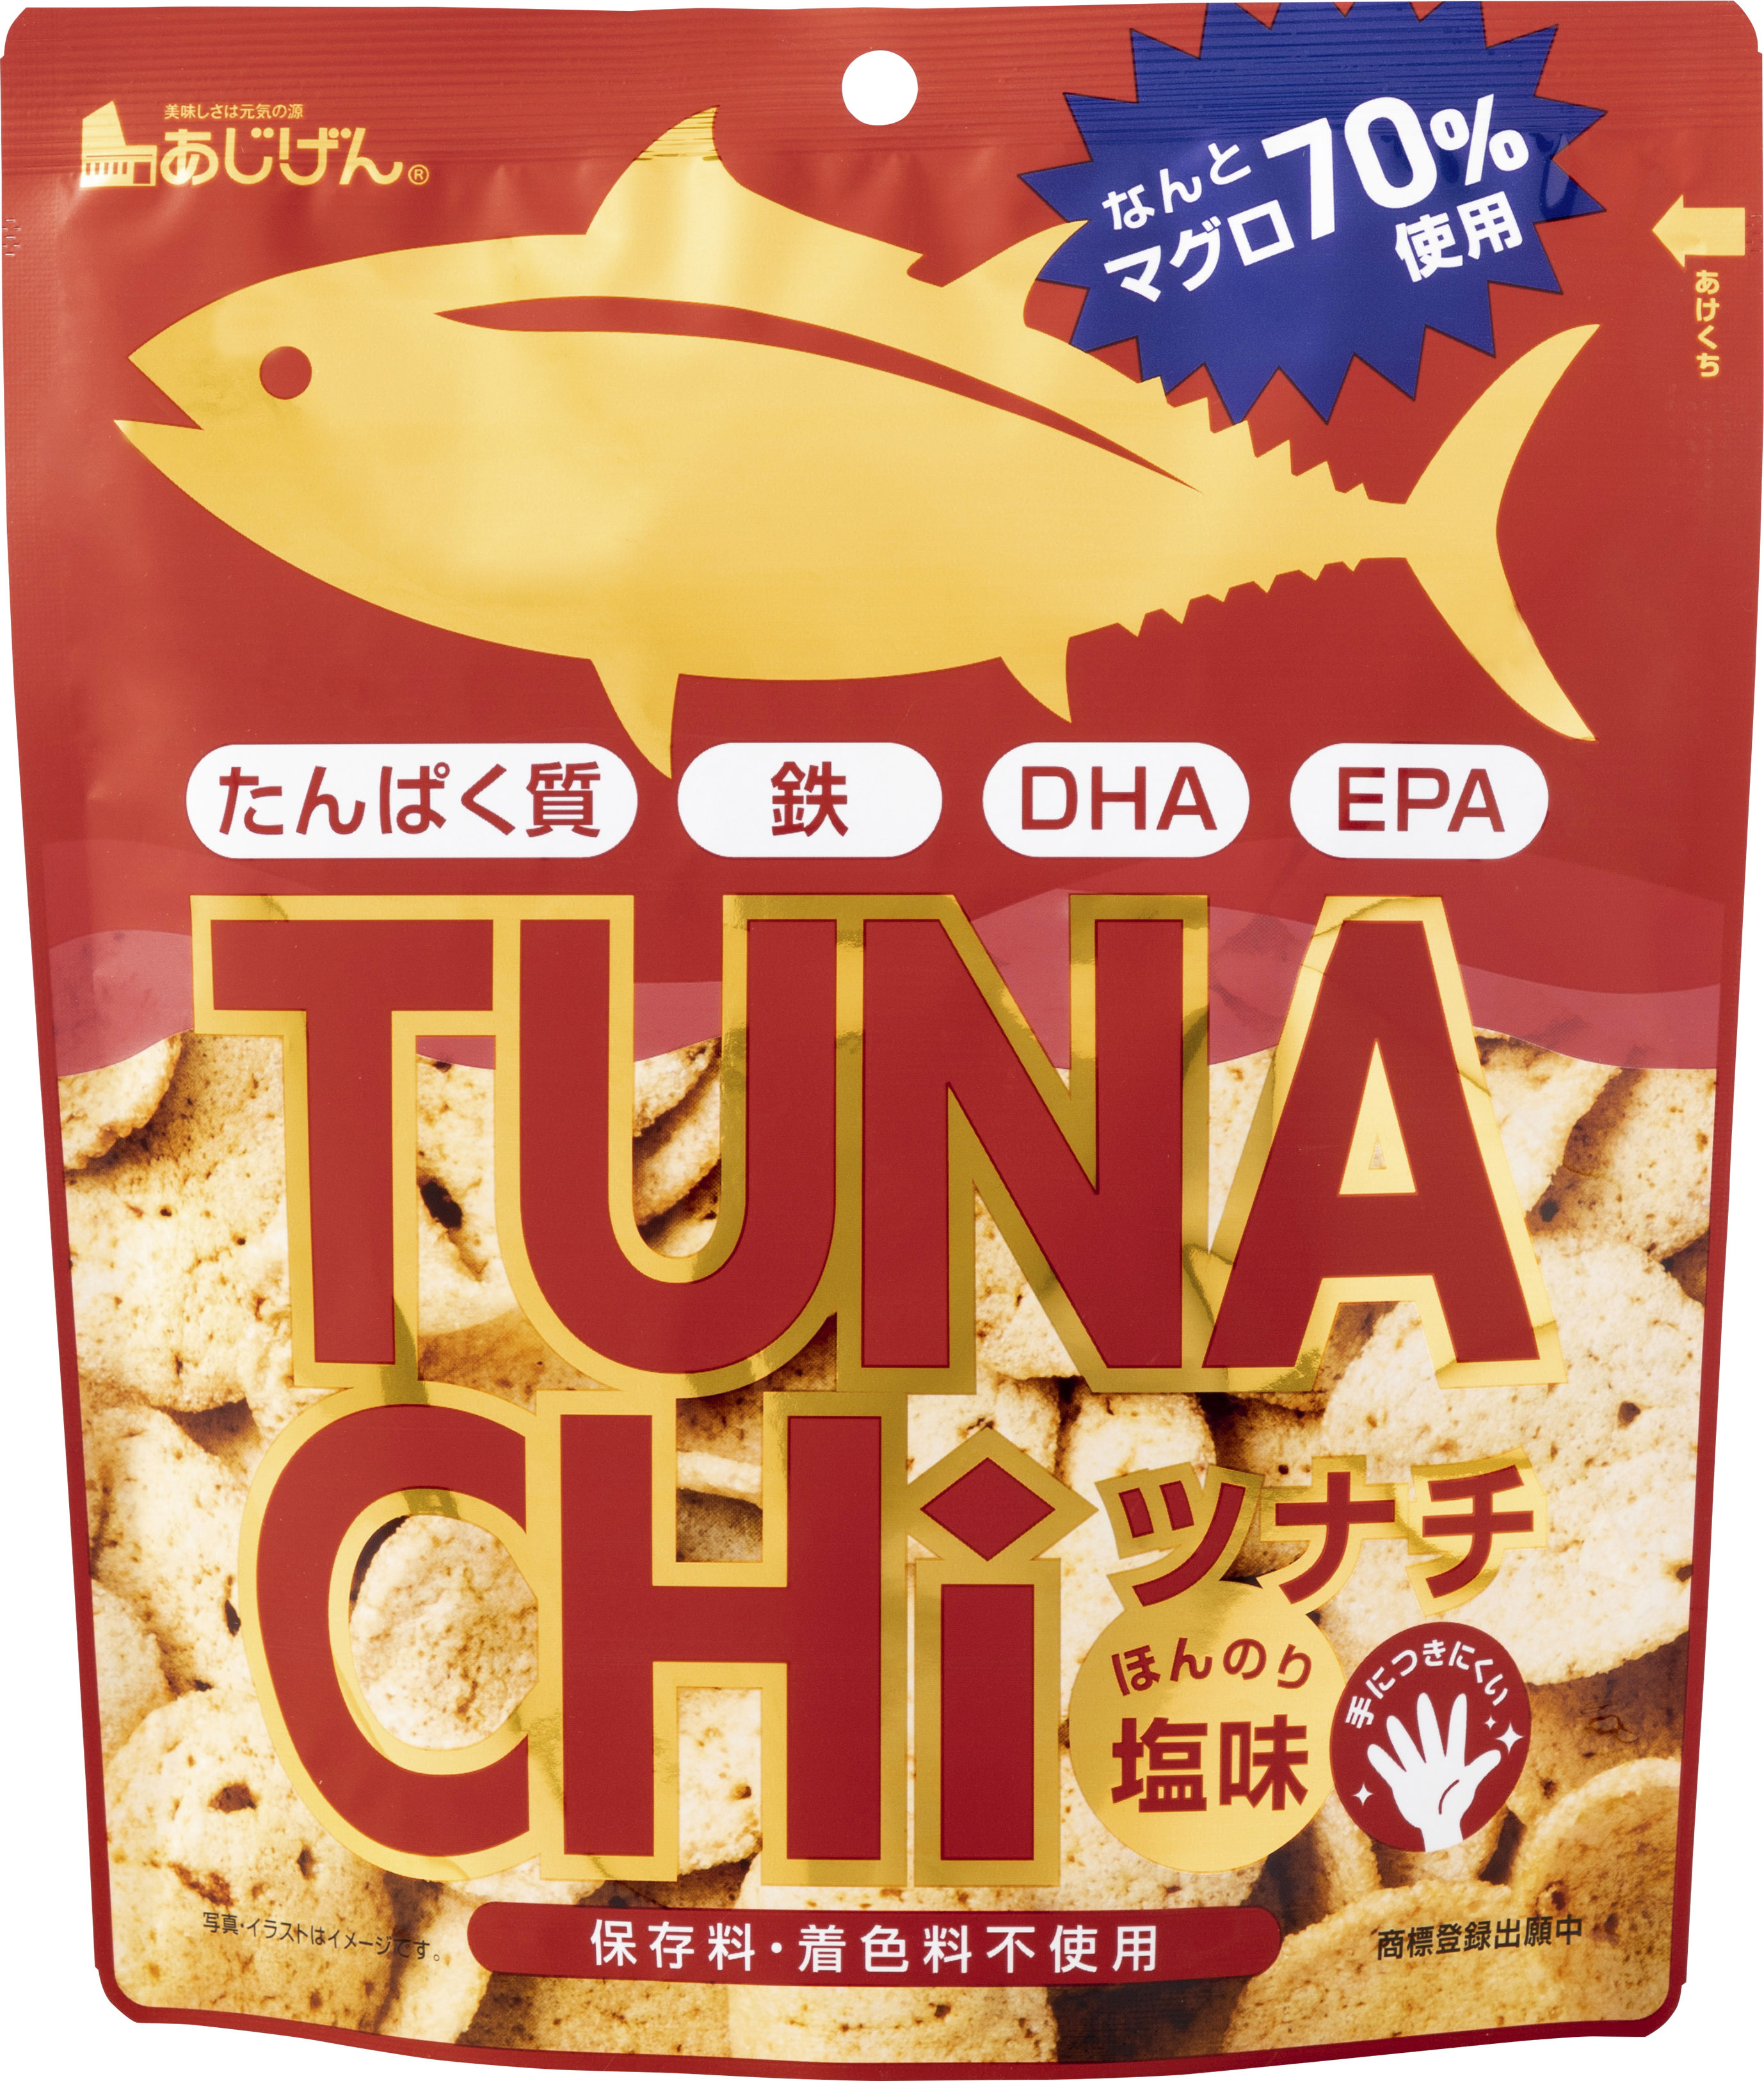 お魚チップス サバチ 待望の第二弾 次は なんとマグロ70 使用 健康志向の次世代チップス Tunachi ツナチ 新発売 有限会社 味源のプレスリリース